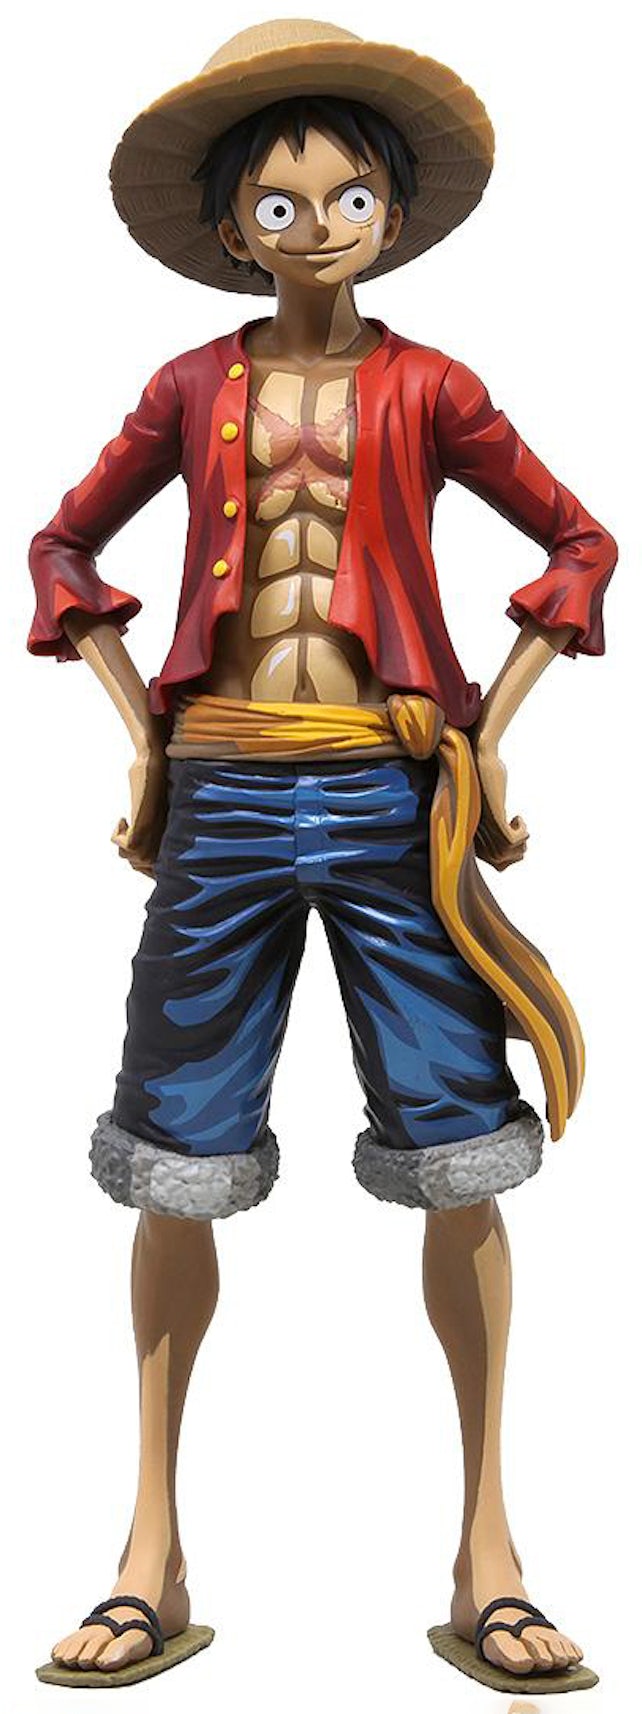 Banpresto One Piece Grandista Nero Portgas D. Ace Figure red